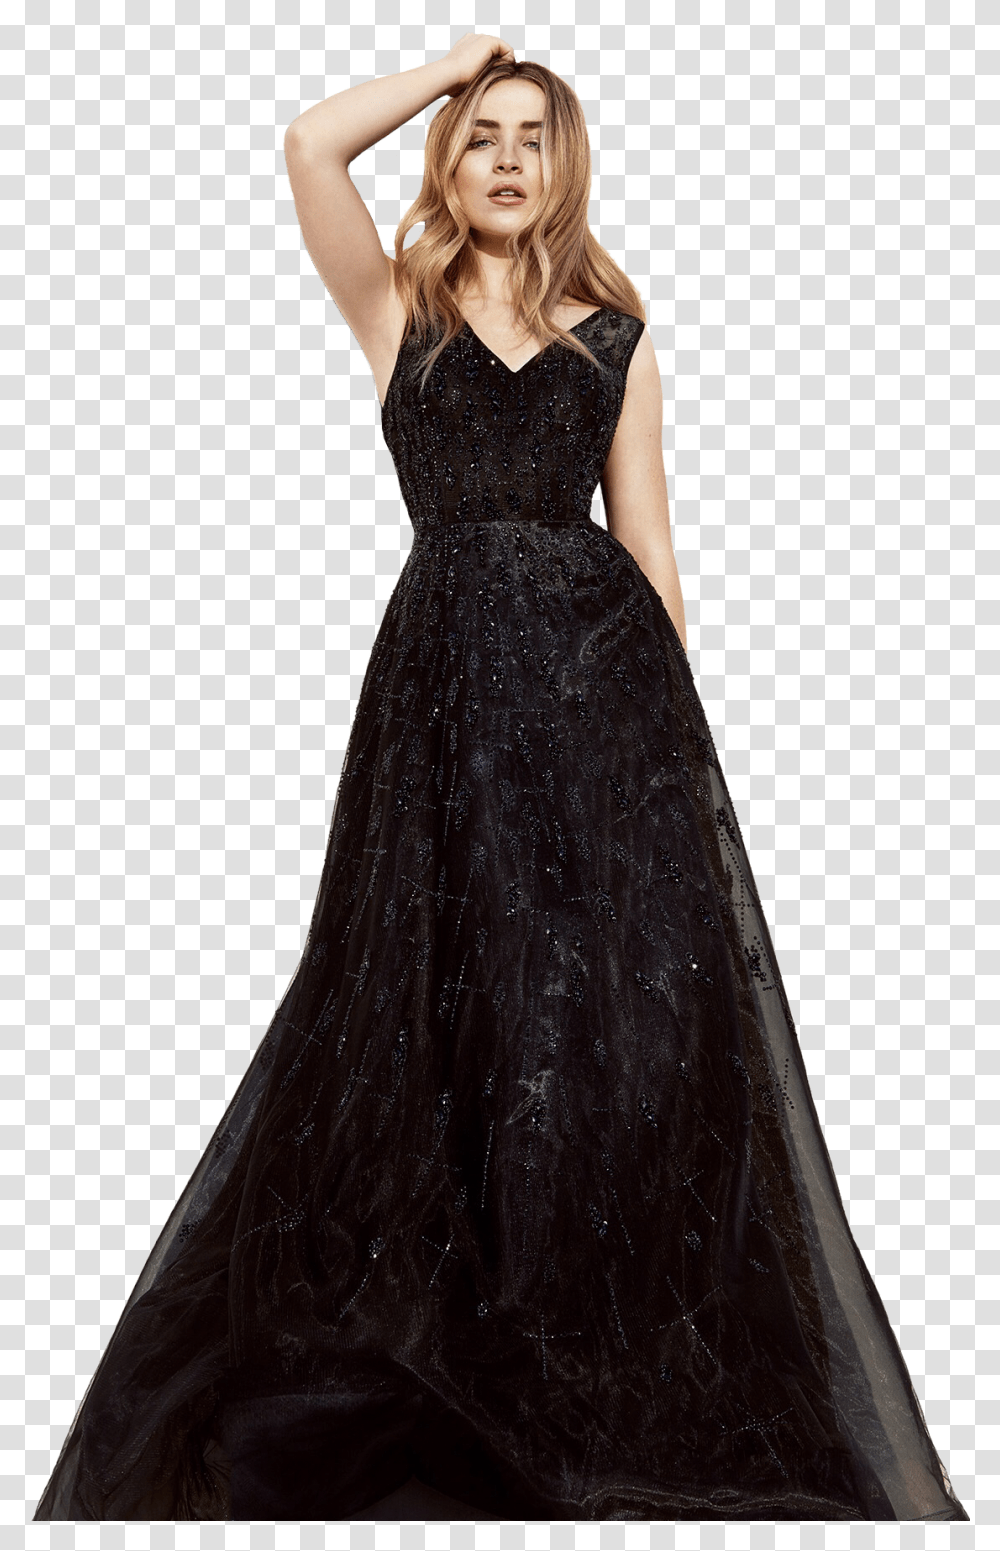 Sabrina Carpenter Prom Dress, Apparel, Female, Person Transparent Png